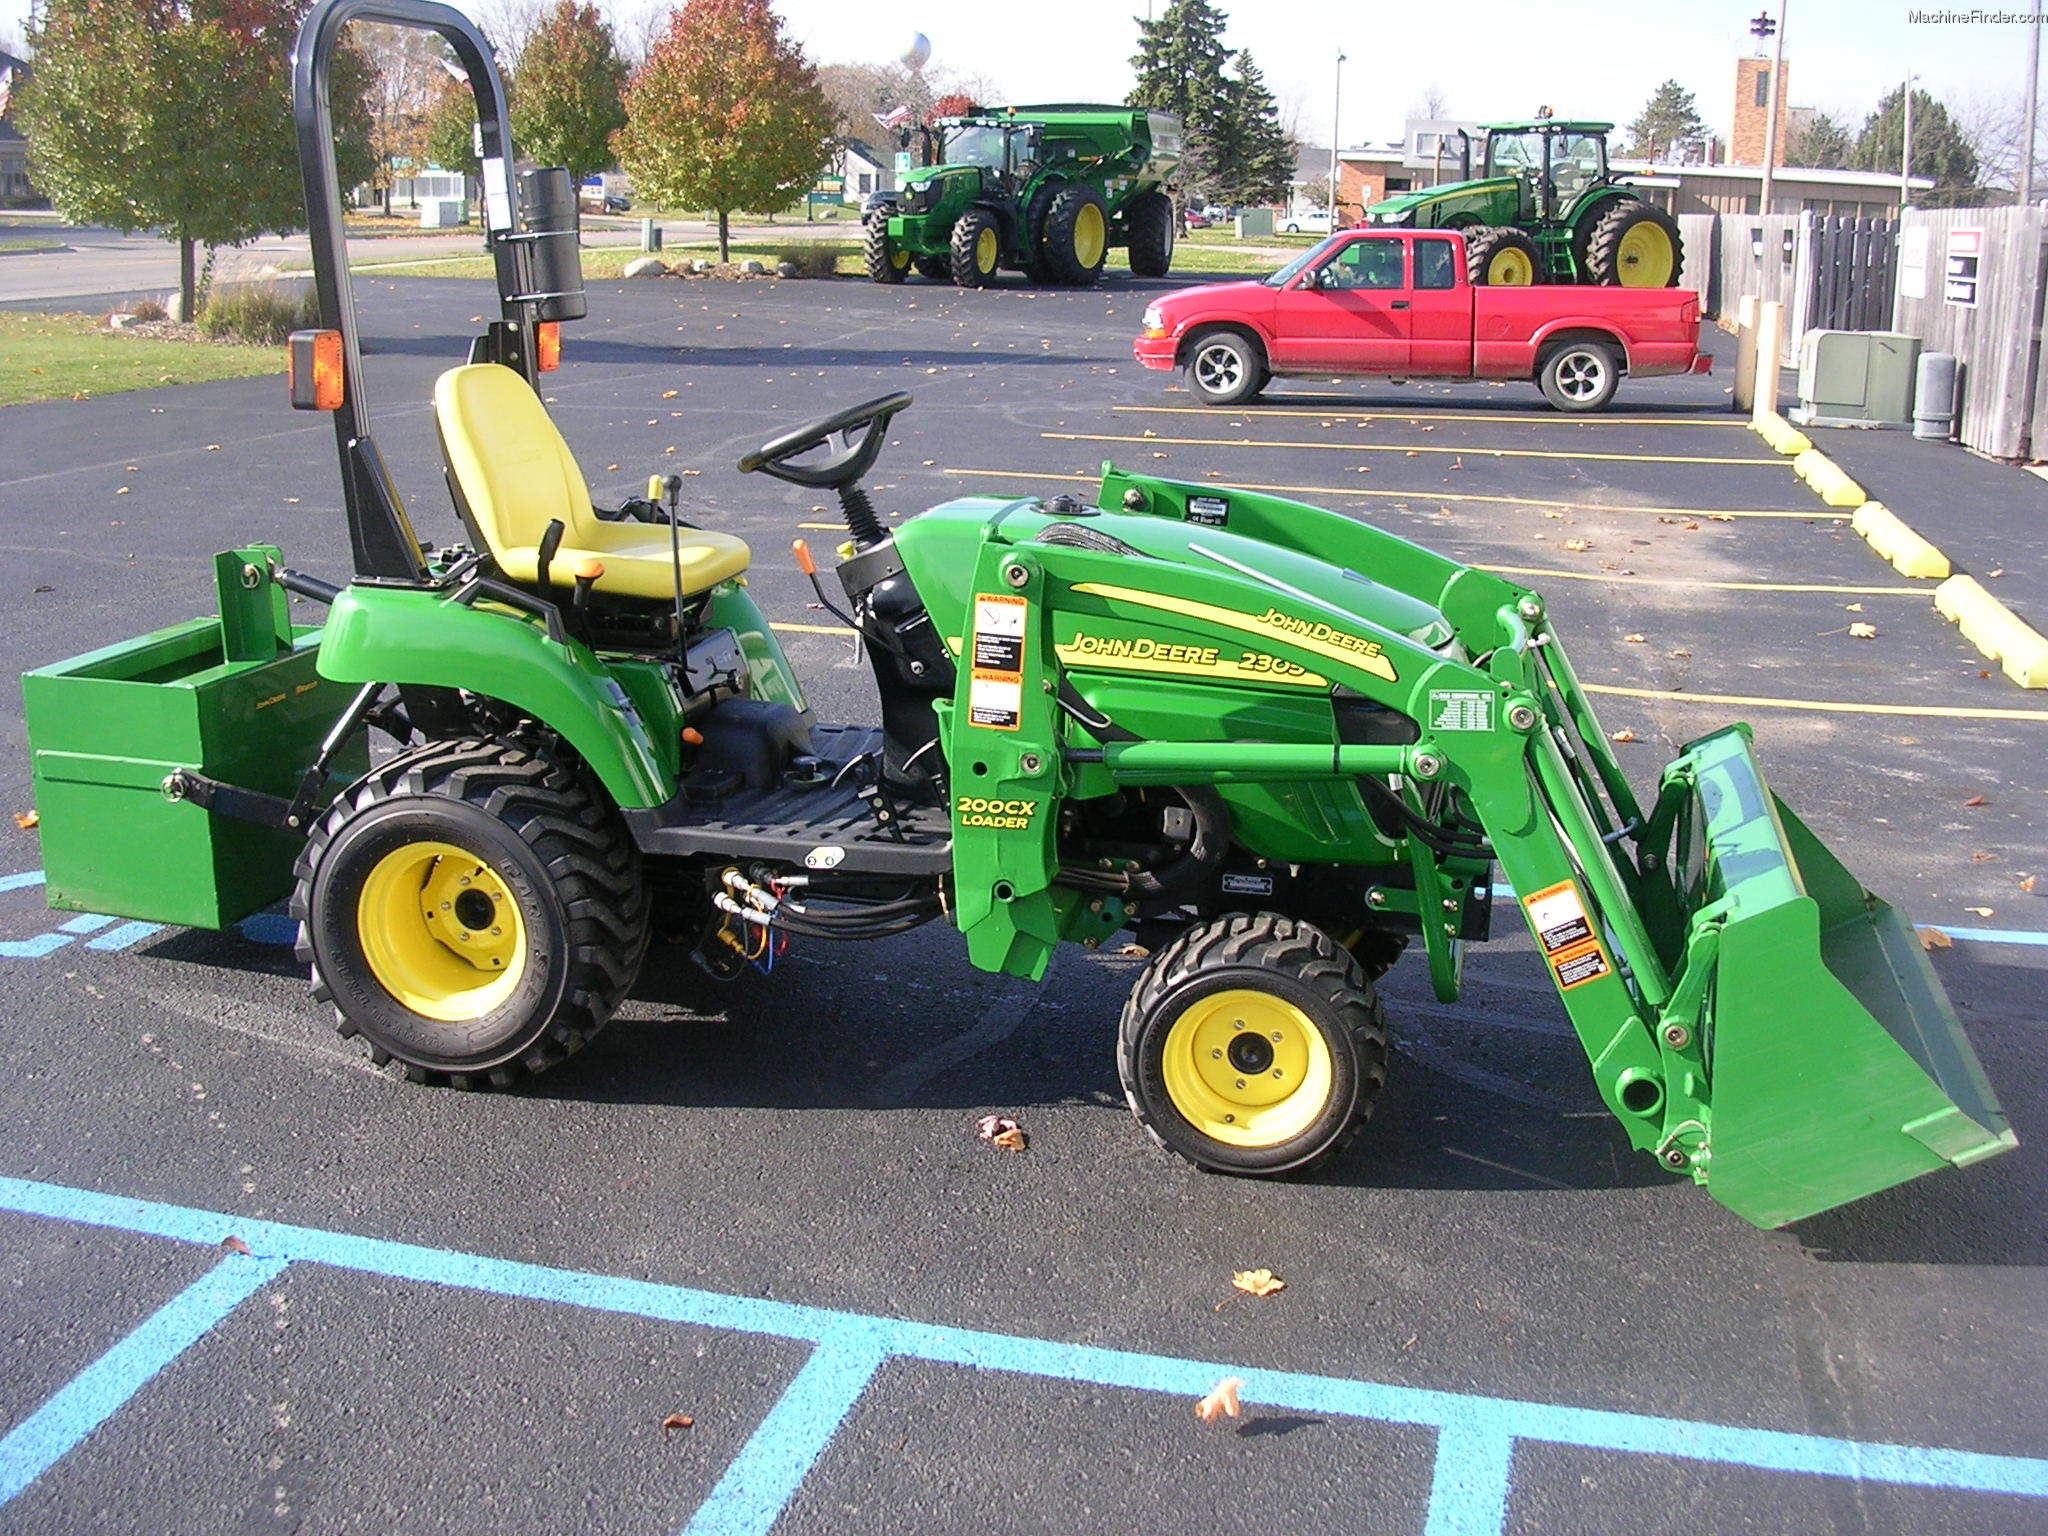 2008 John Deere 2305 Tractors Compact 1 40hp John Deere Machinefinder 2826